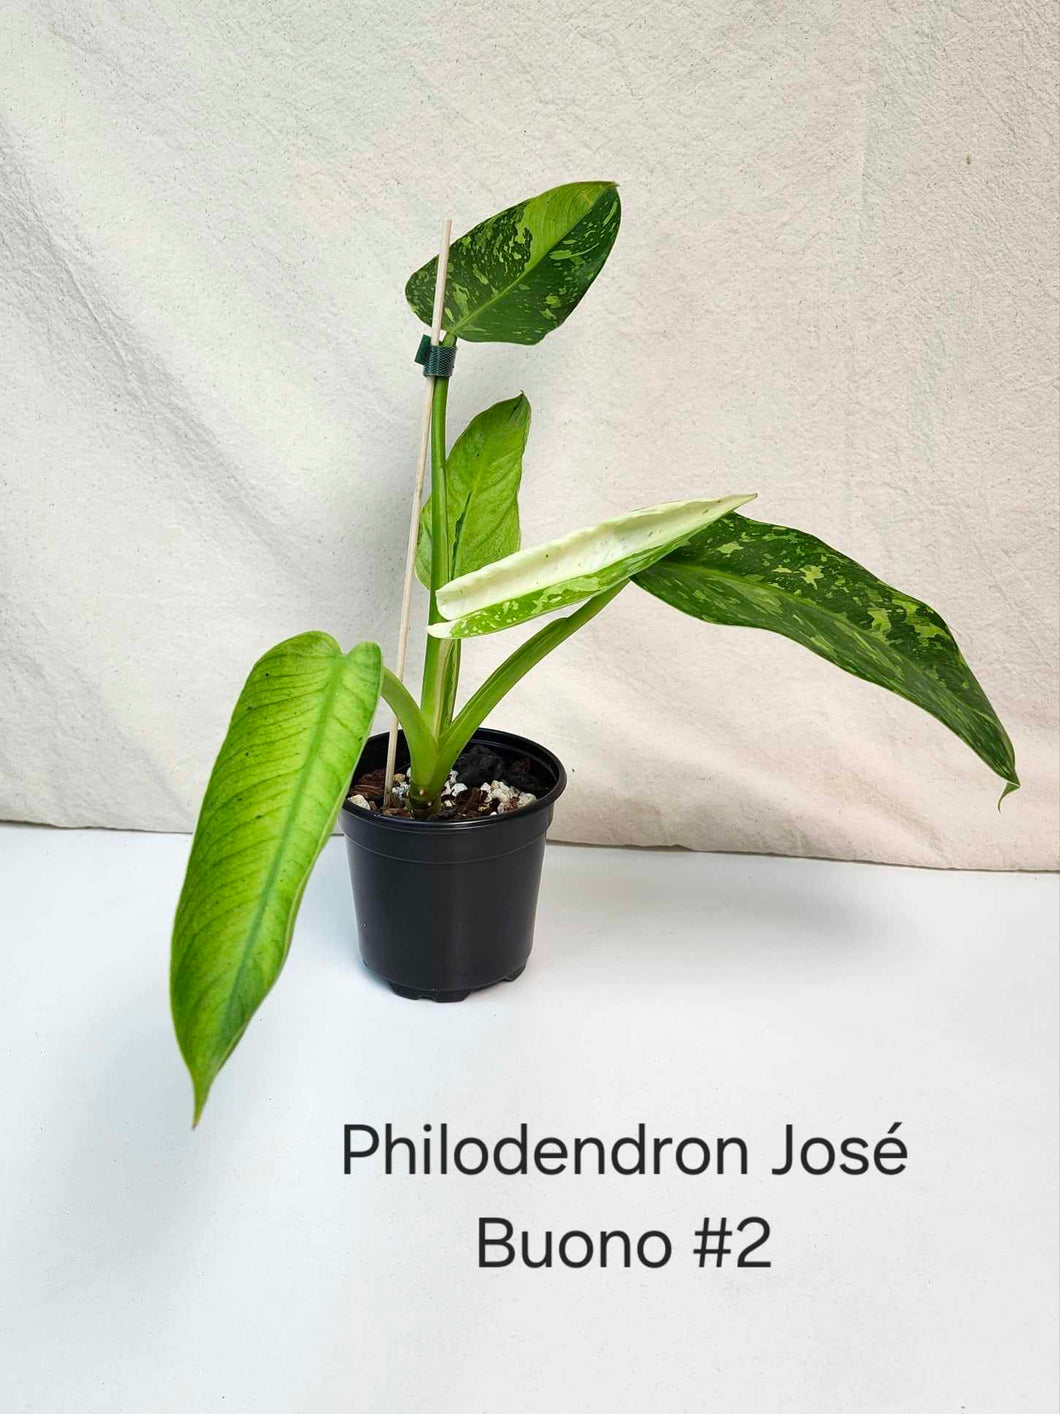 Philodendron jose buono  #2